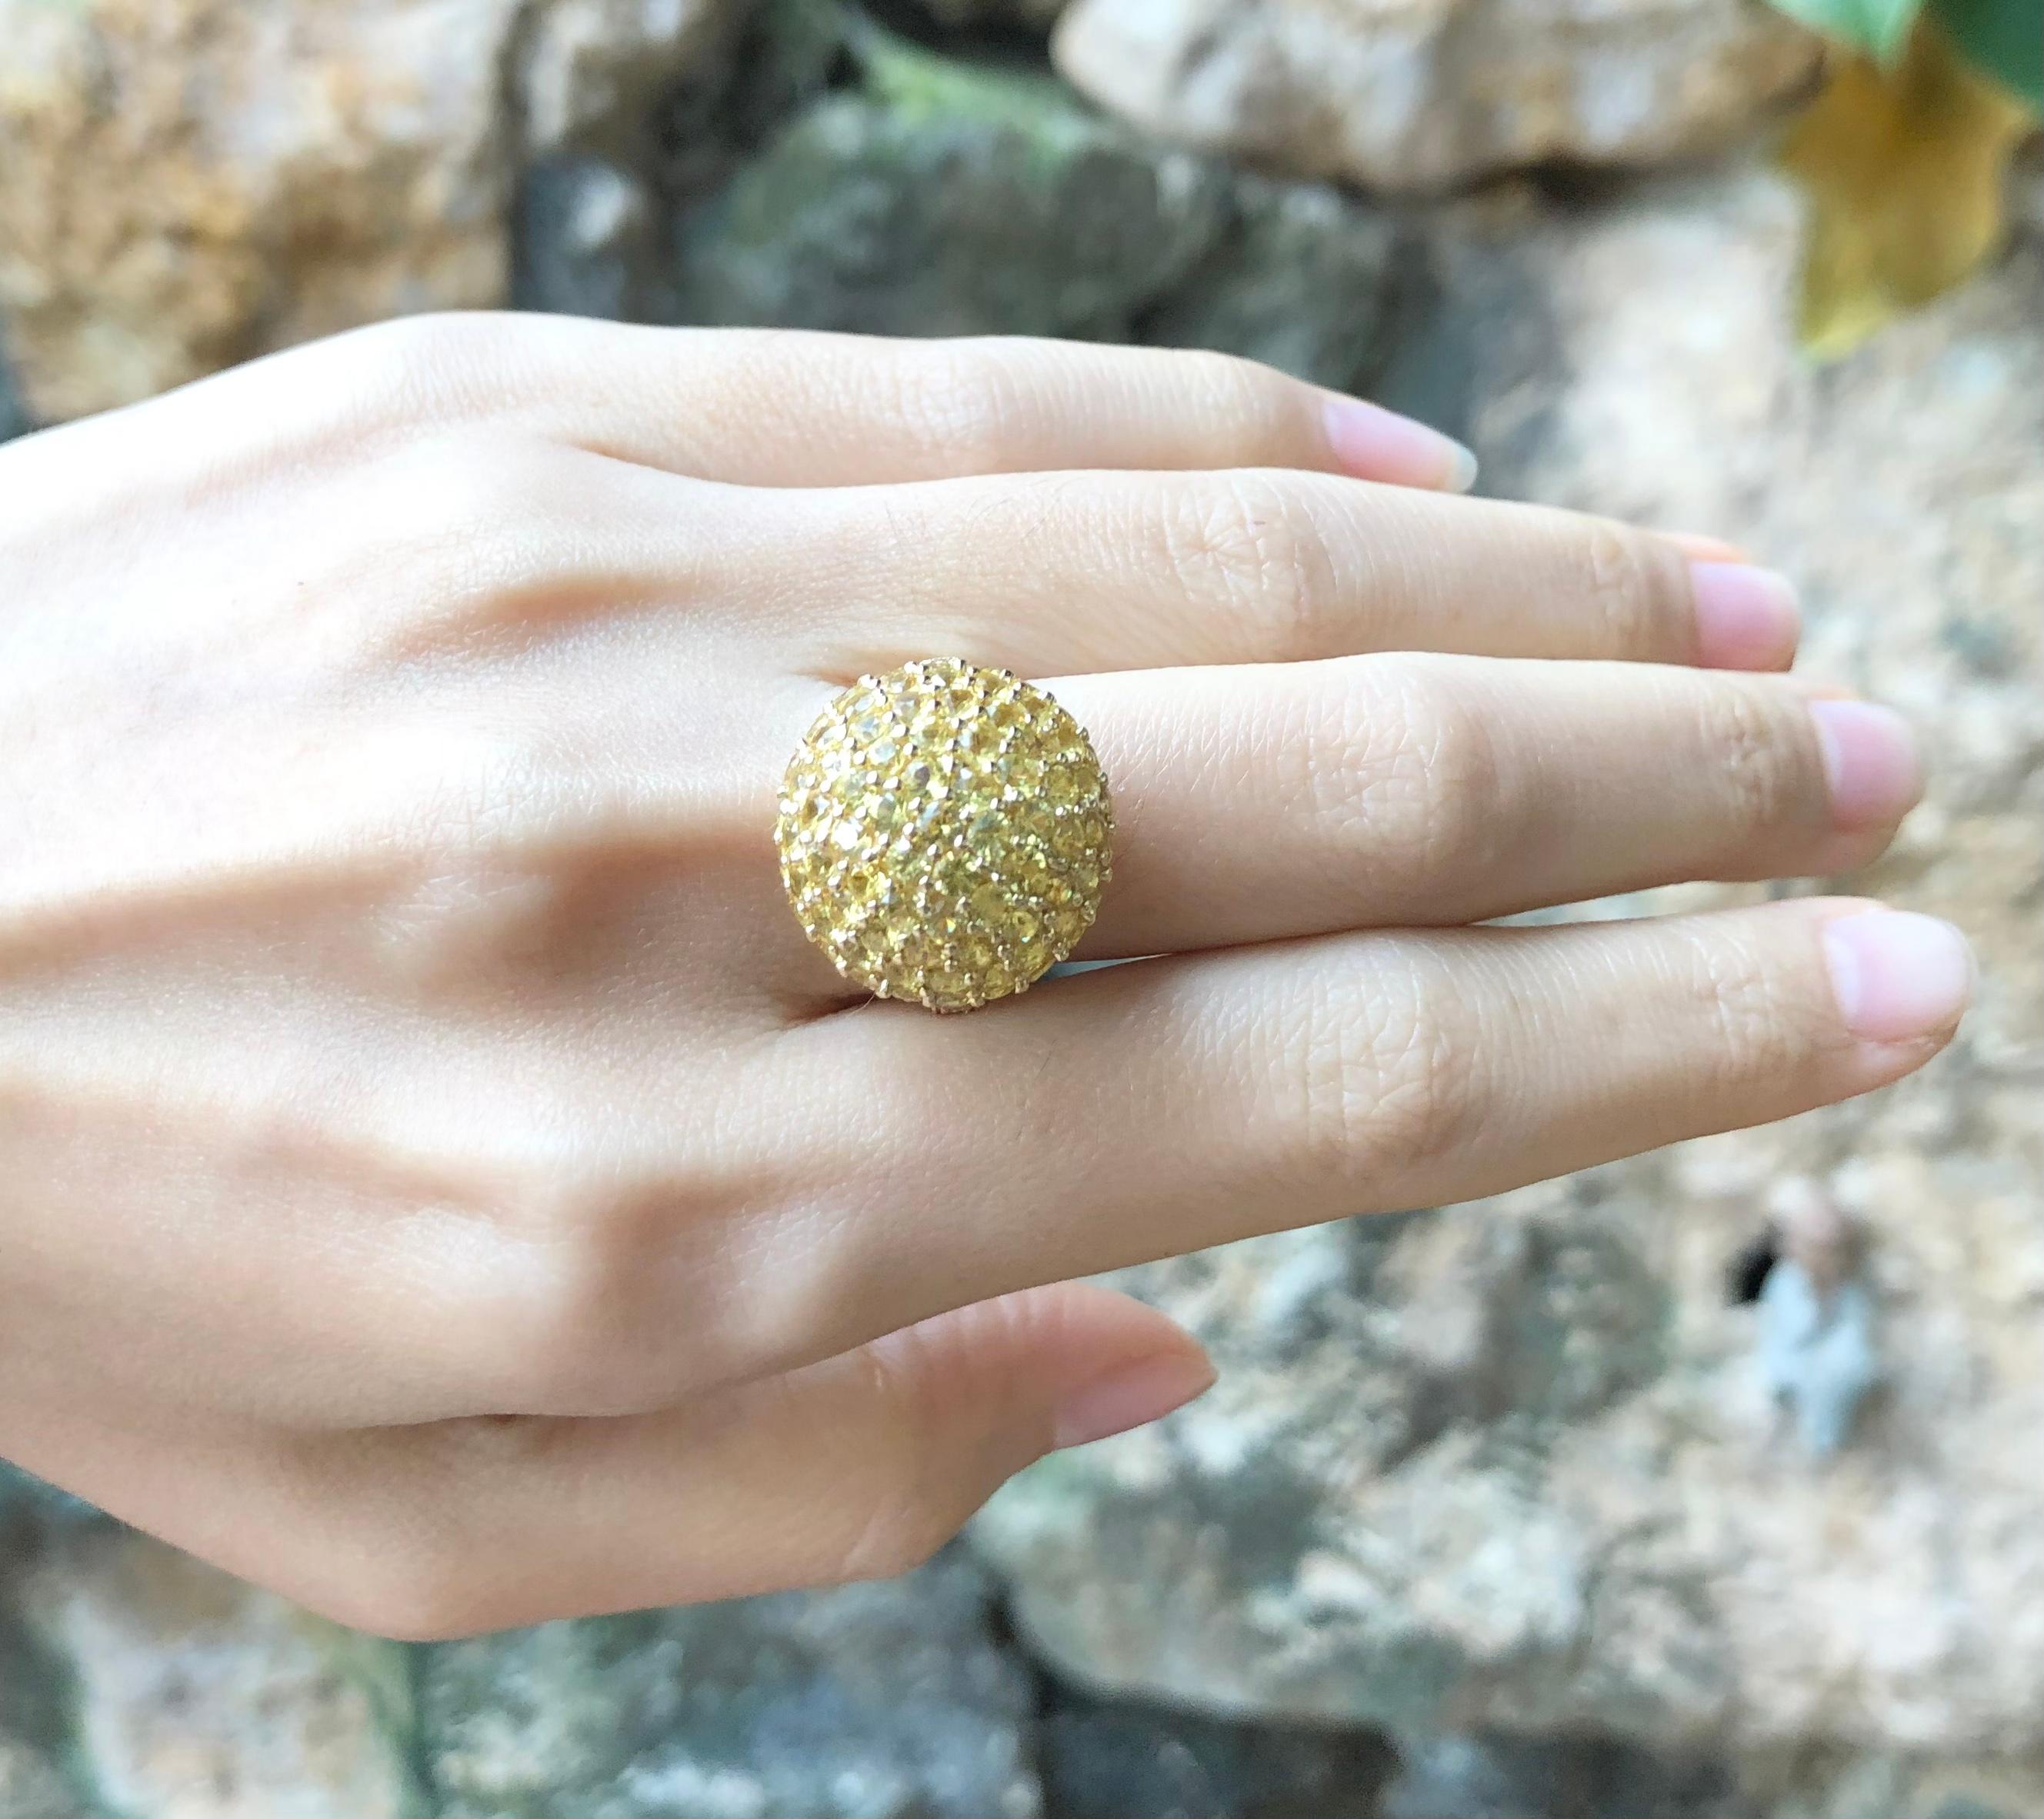 Gelber Saphir 7,06 Karat mit braunem Diamant 0,55 Karat Ring in 18 Karat Goldfassung

Breite:  1.9 cm 
Länge: 1,9 cm
Ringgröße: 51
Gesamtgewicht: 11,81 Gramm

